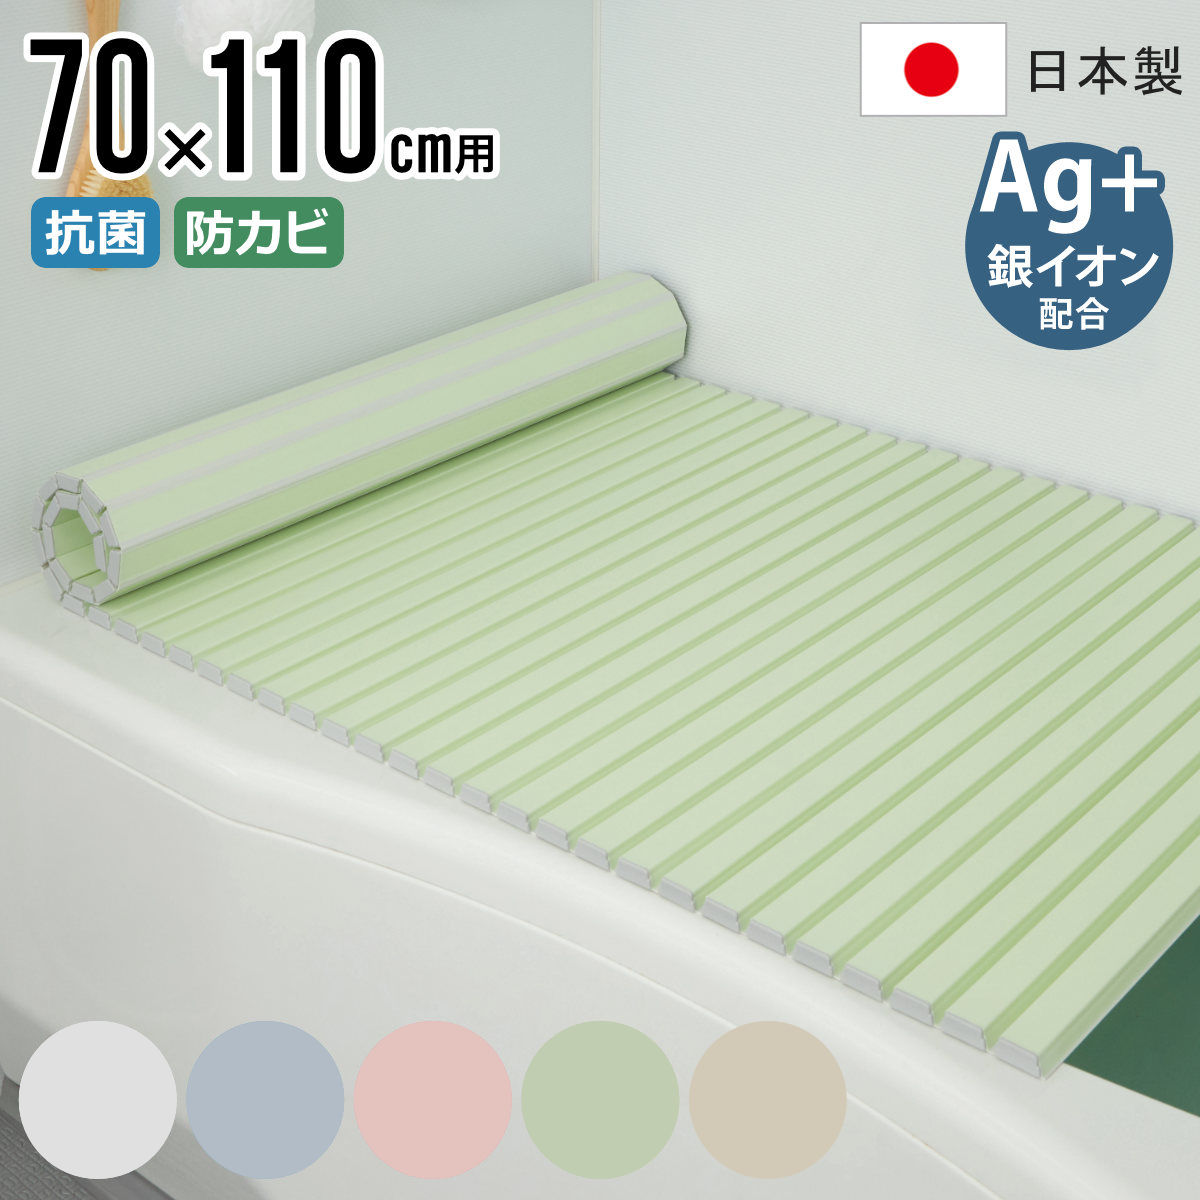 風呂ふた シャッター Ag抗菌 日本製 70×110cm 用 M-11 実寸70×112cm